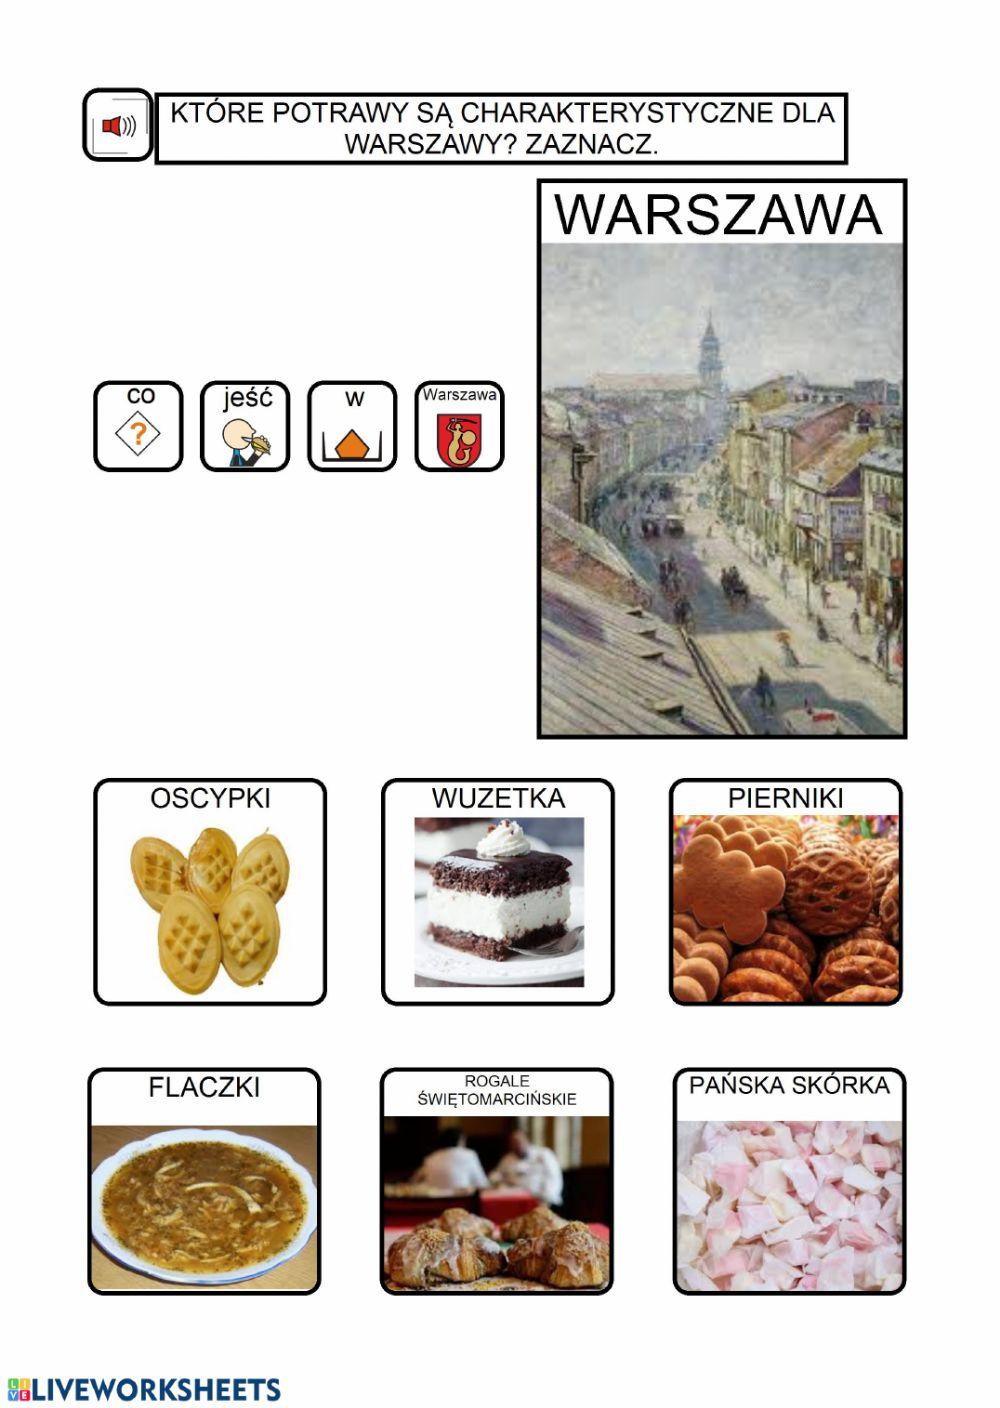 Warszawa jak z obrazka